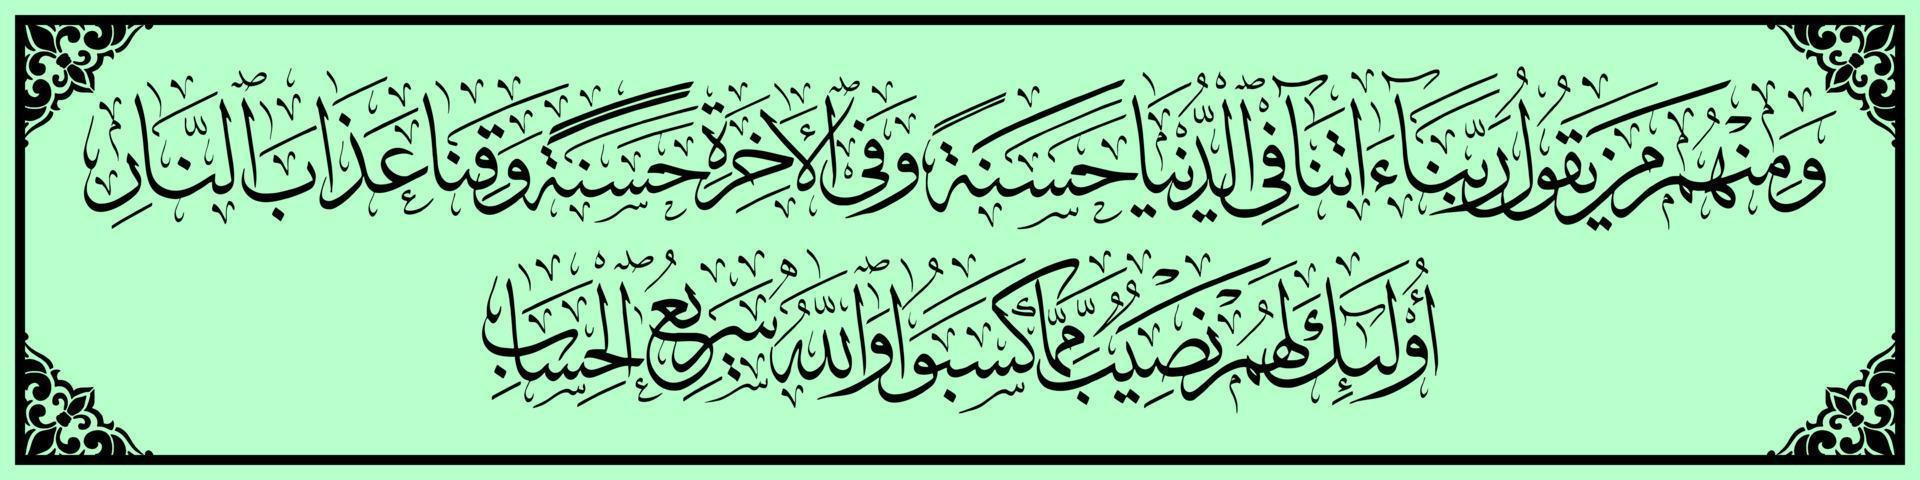 caligrafia árabe, al qur'an surah al baqarah 201, tradução e alguns deles rezam, ó nosso senhor, dê-nos o bem neste mundo e o bem no outro, e proteja-nos do castigo do inferno. vetor